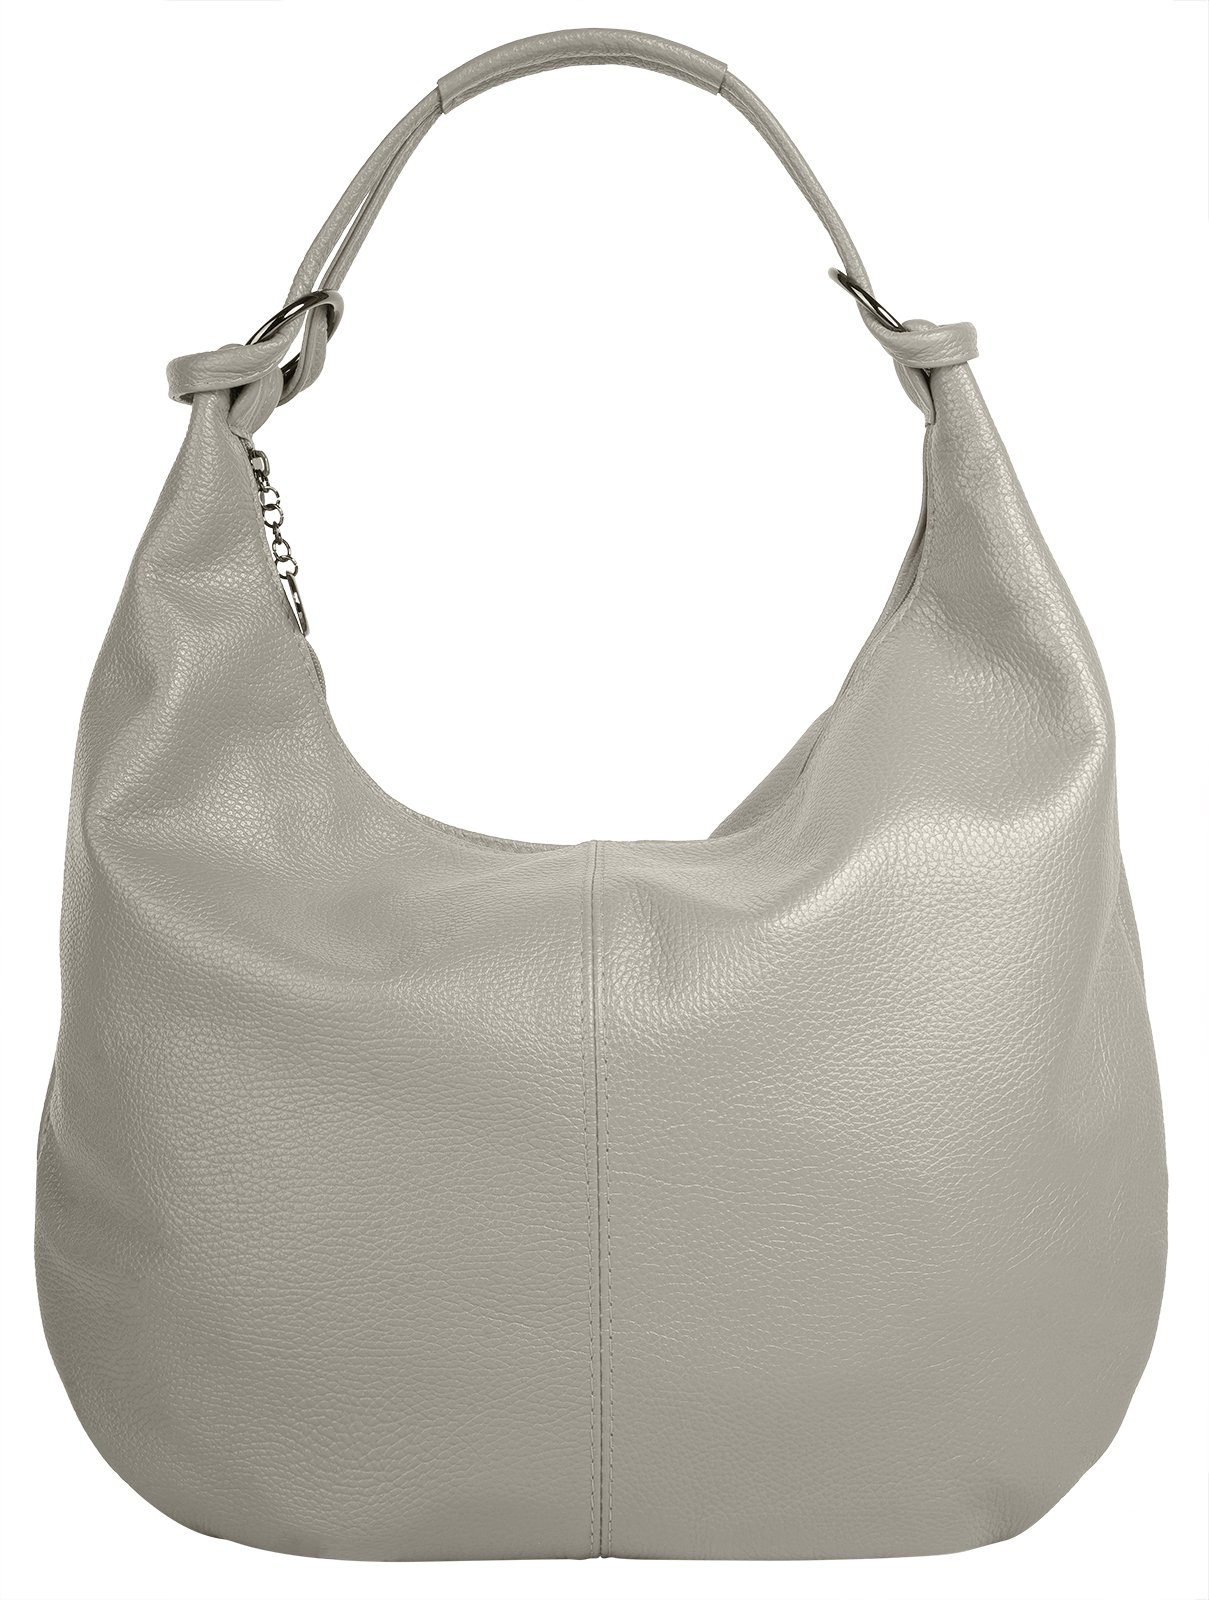 Graue Leder Handtaschen für Damen online kaufen | OTTO